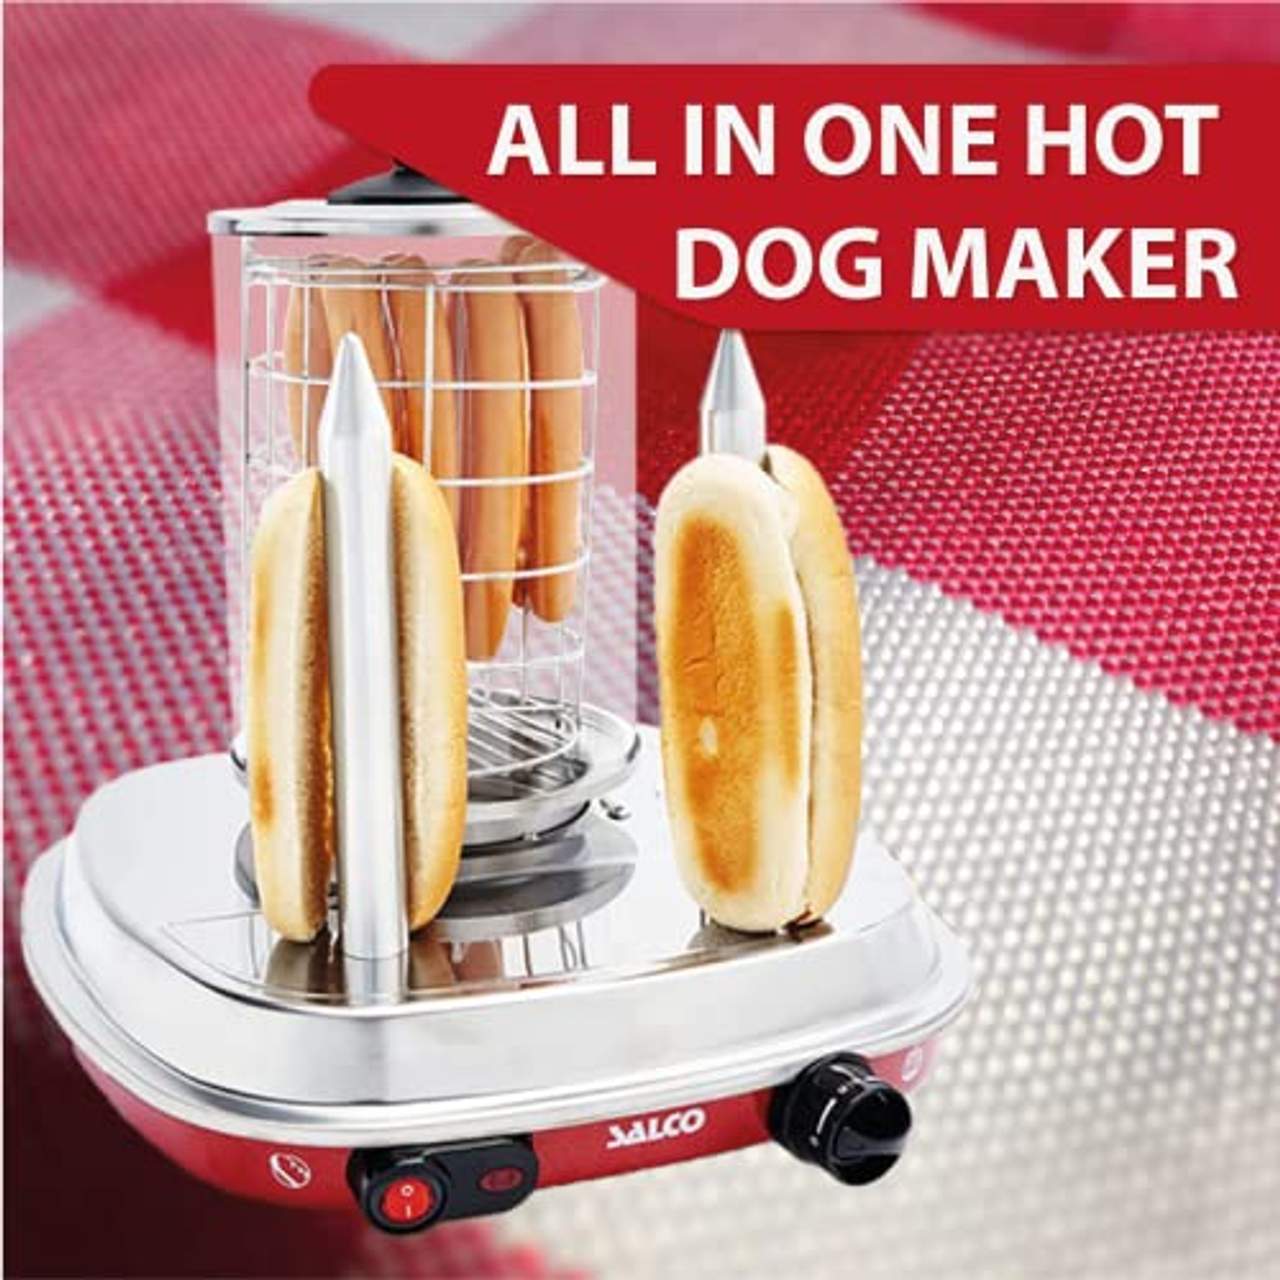 Salco Hot-Dog Maker Hot-Dog Maschine SHO-6